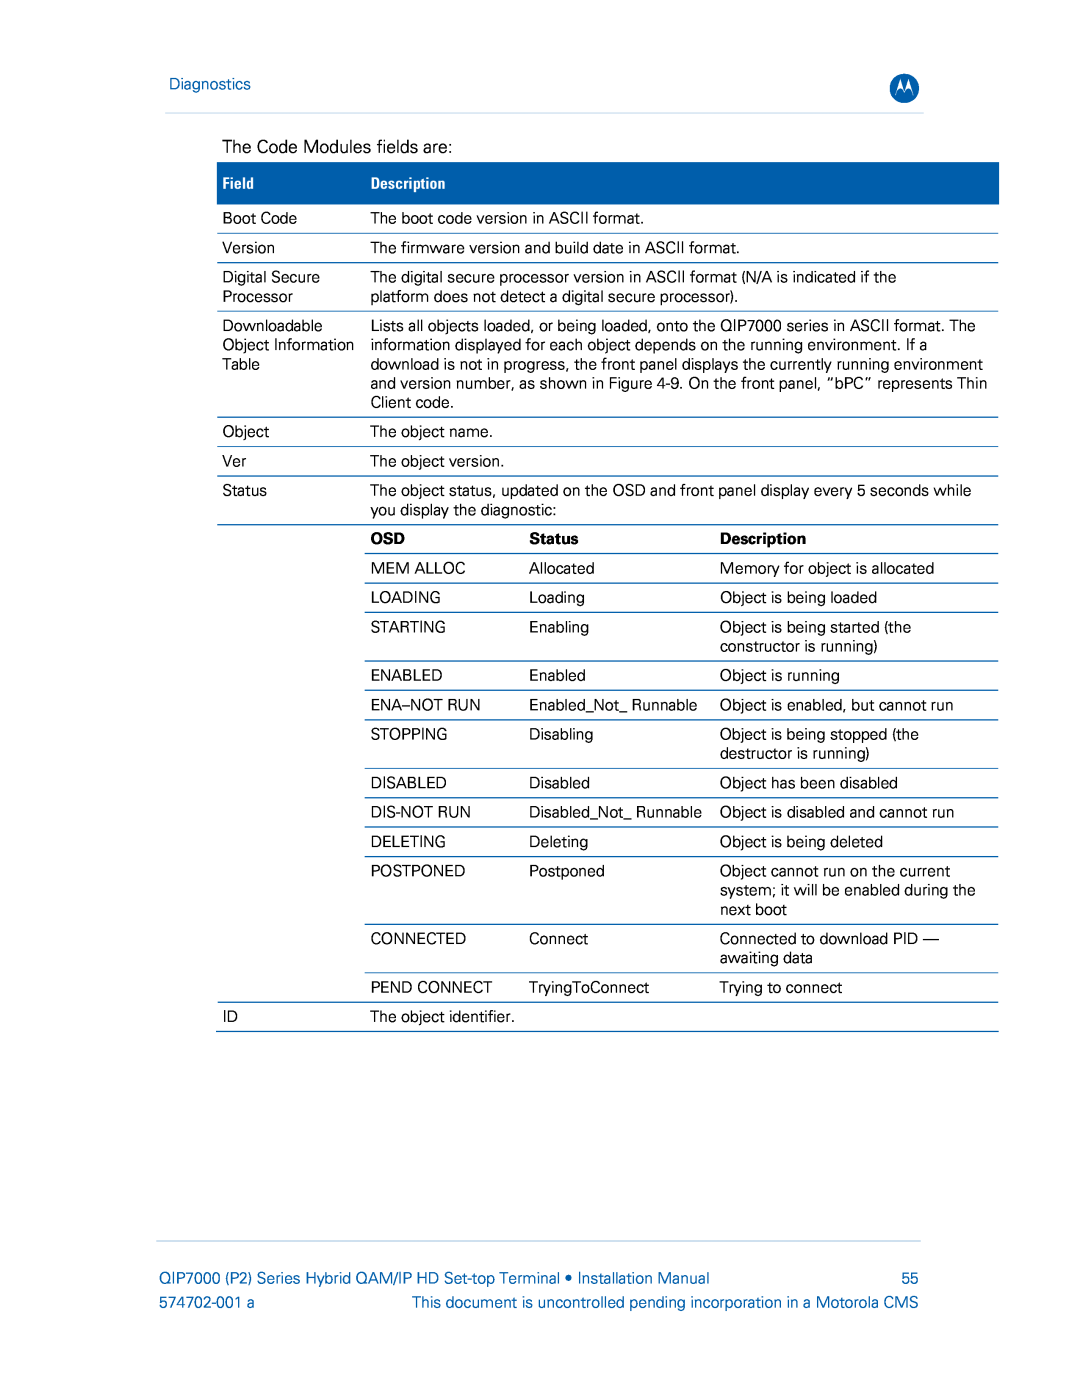 Motorola QIP7000 installation manual Diagnostics, Field, Description, Status, 574702-001 a 